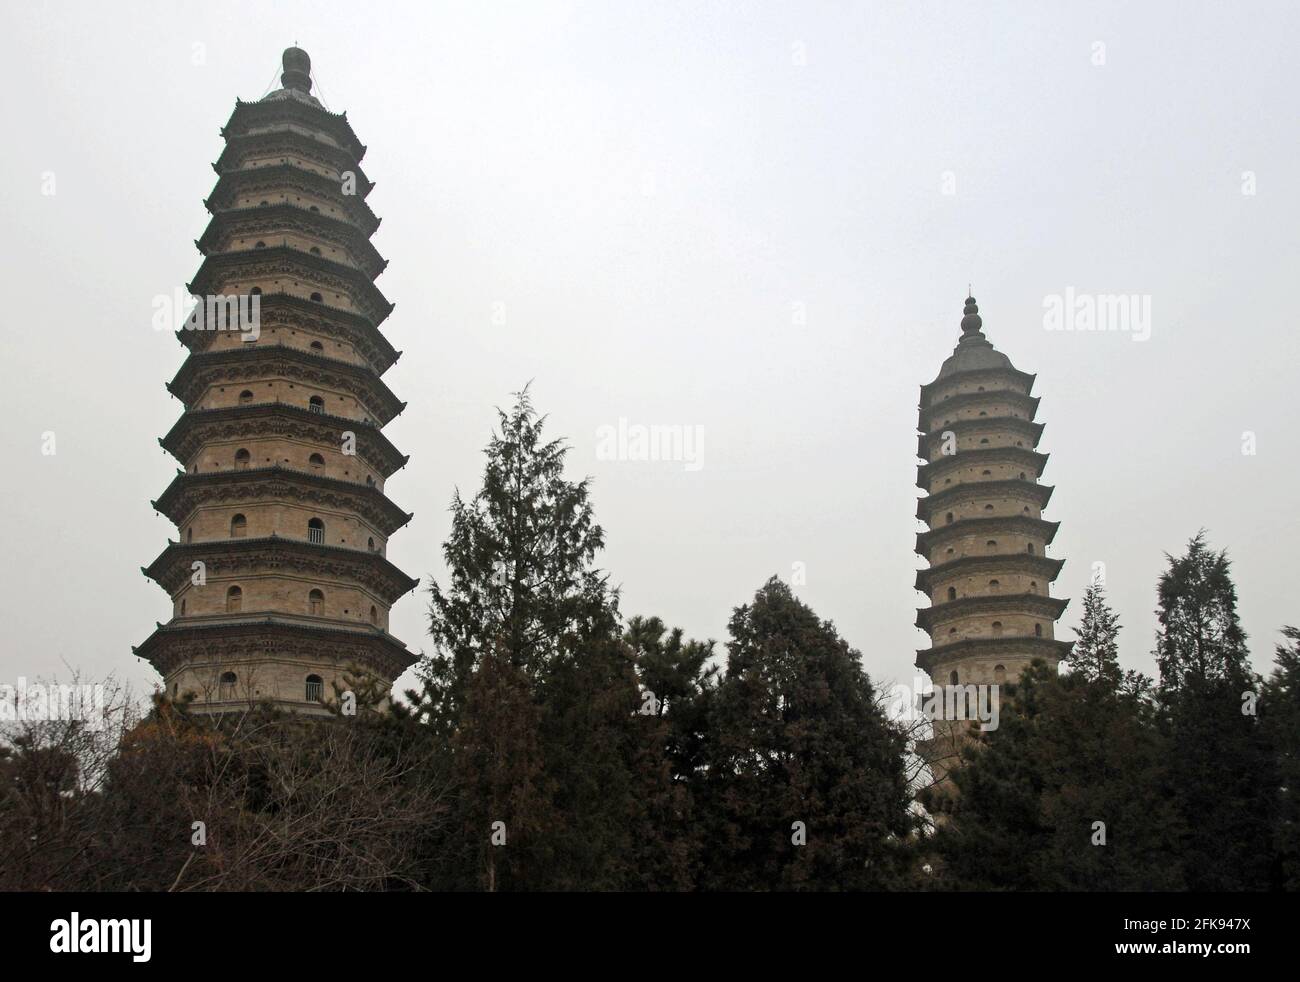 Les célèbres pagodes du Temple de la Pagode jumelle (Temple de Yongzuo) à Taiyuan, Shanxi, Chine. Les pagodes jumelles sont l'un des principaux points de repère de Taiyuan. Banque D'Images